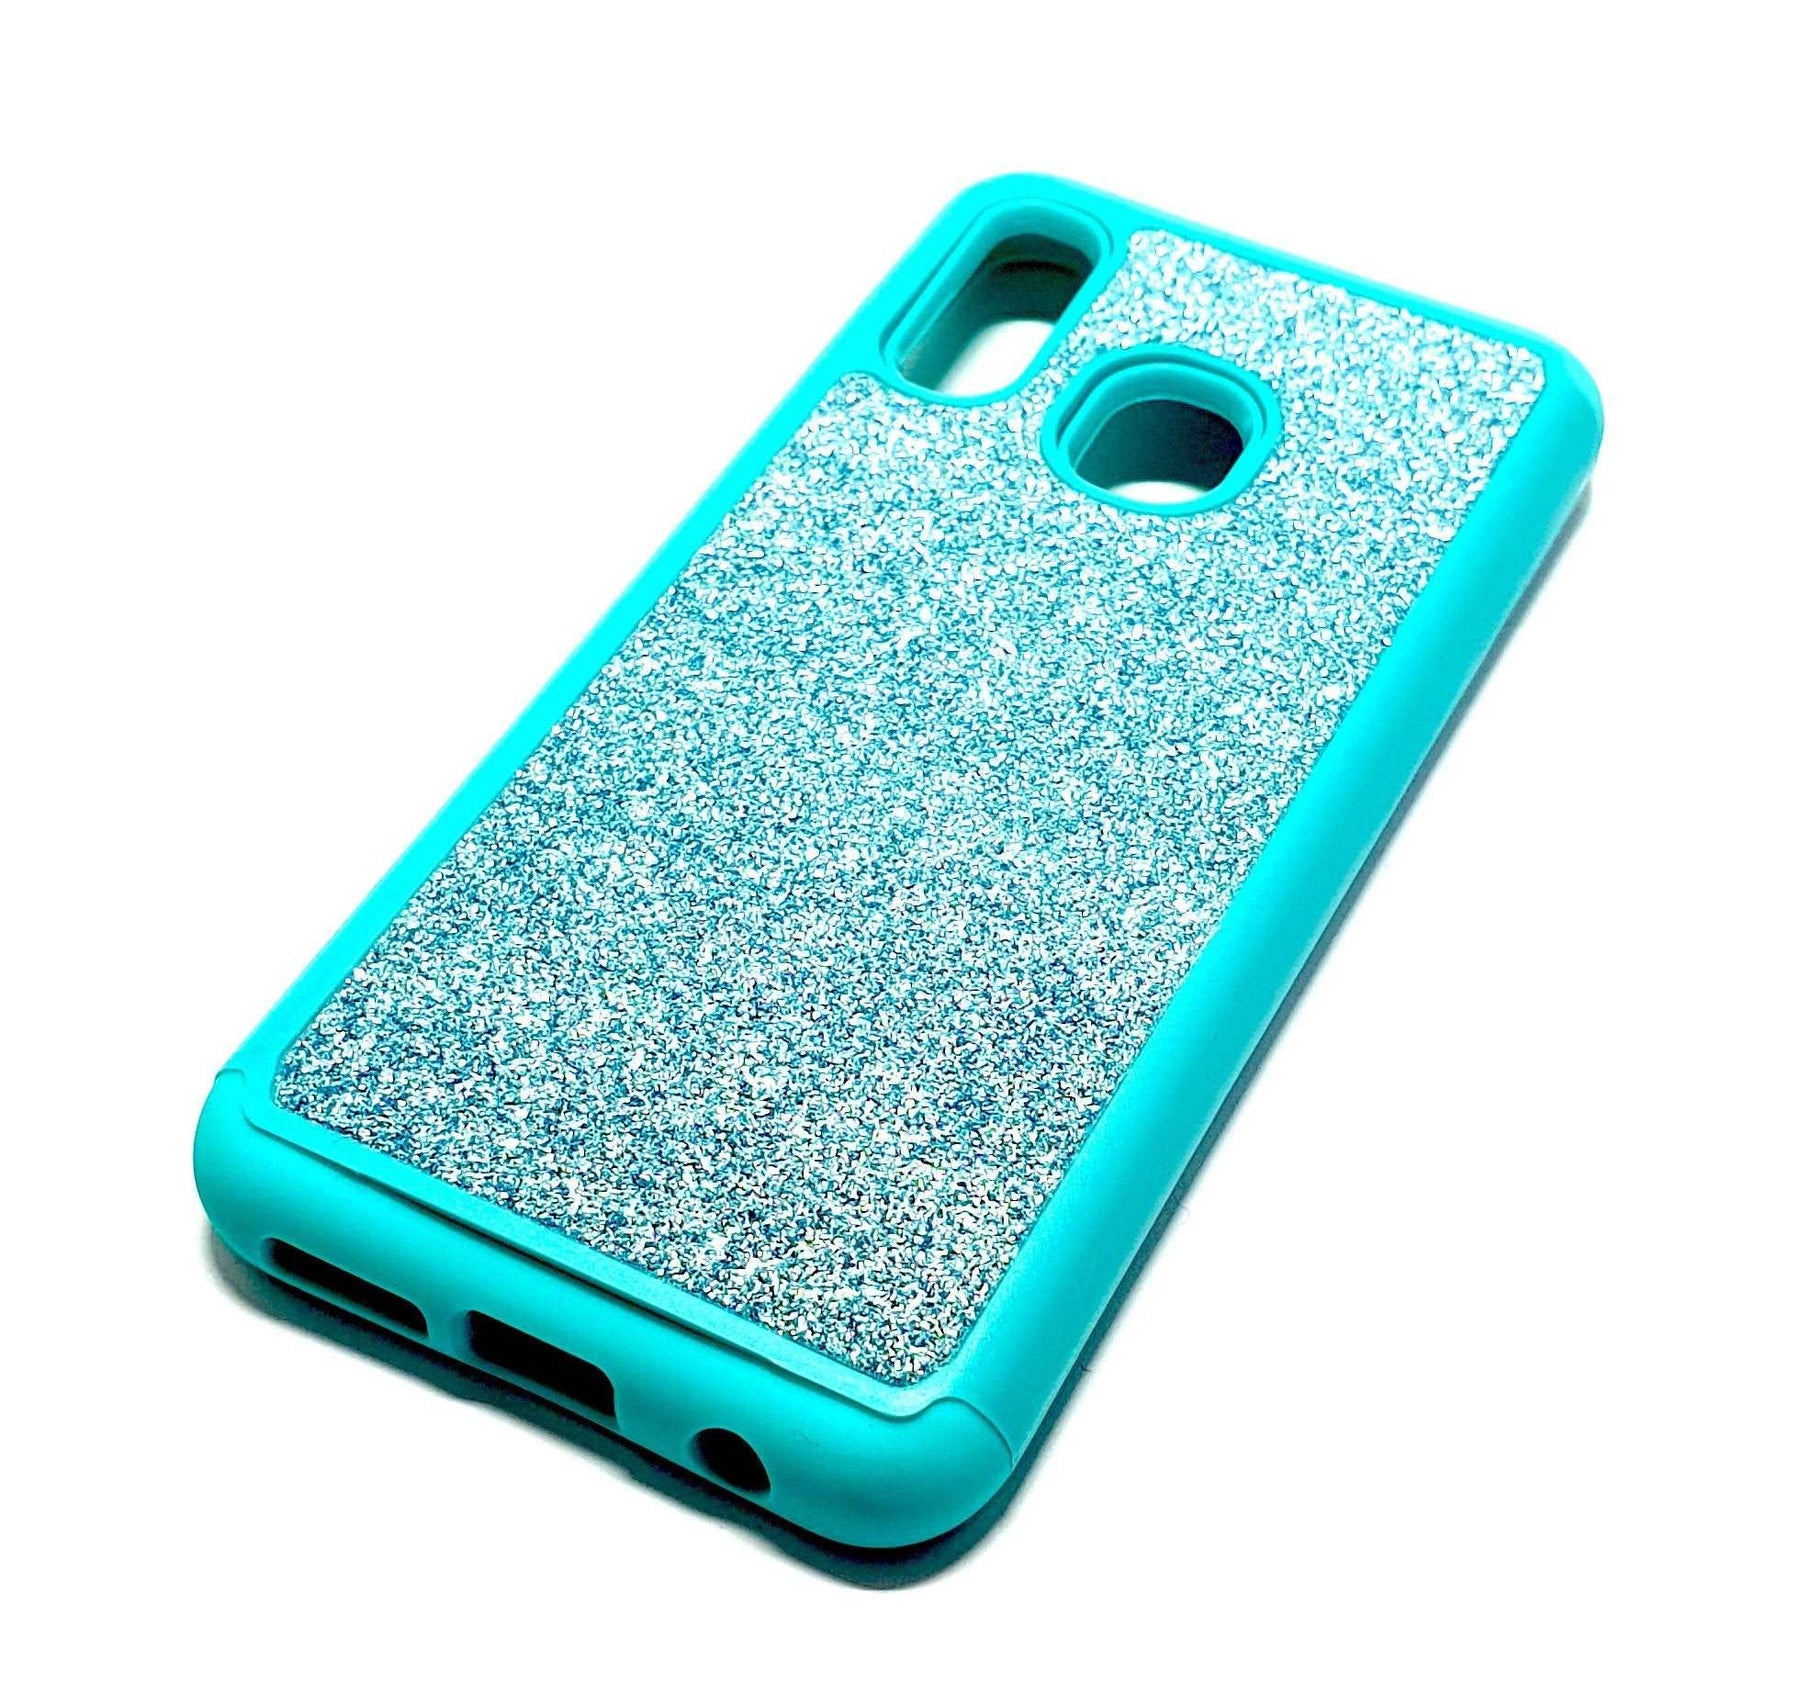 Samsung A20e Shockproof light blue glitter phone case